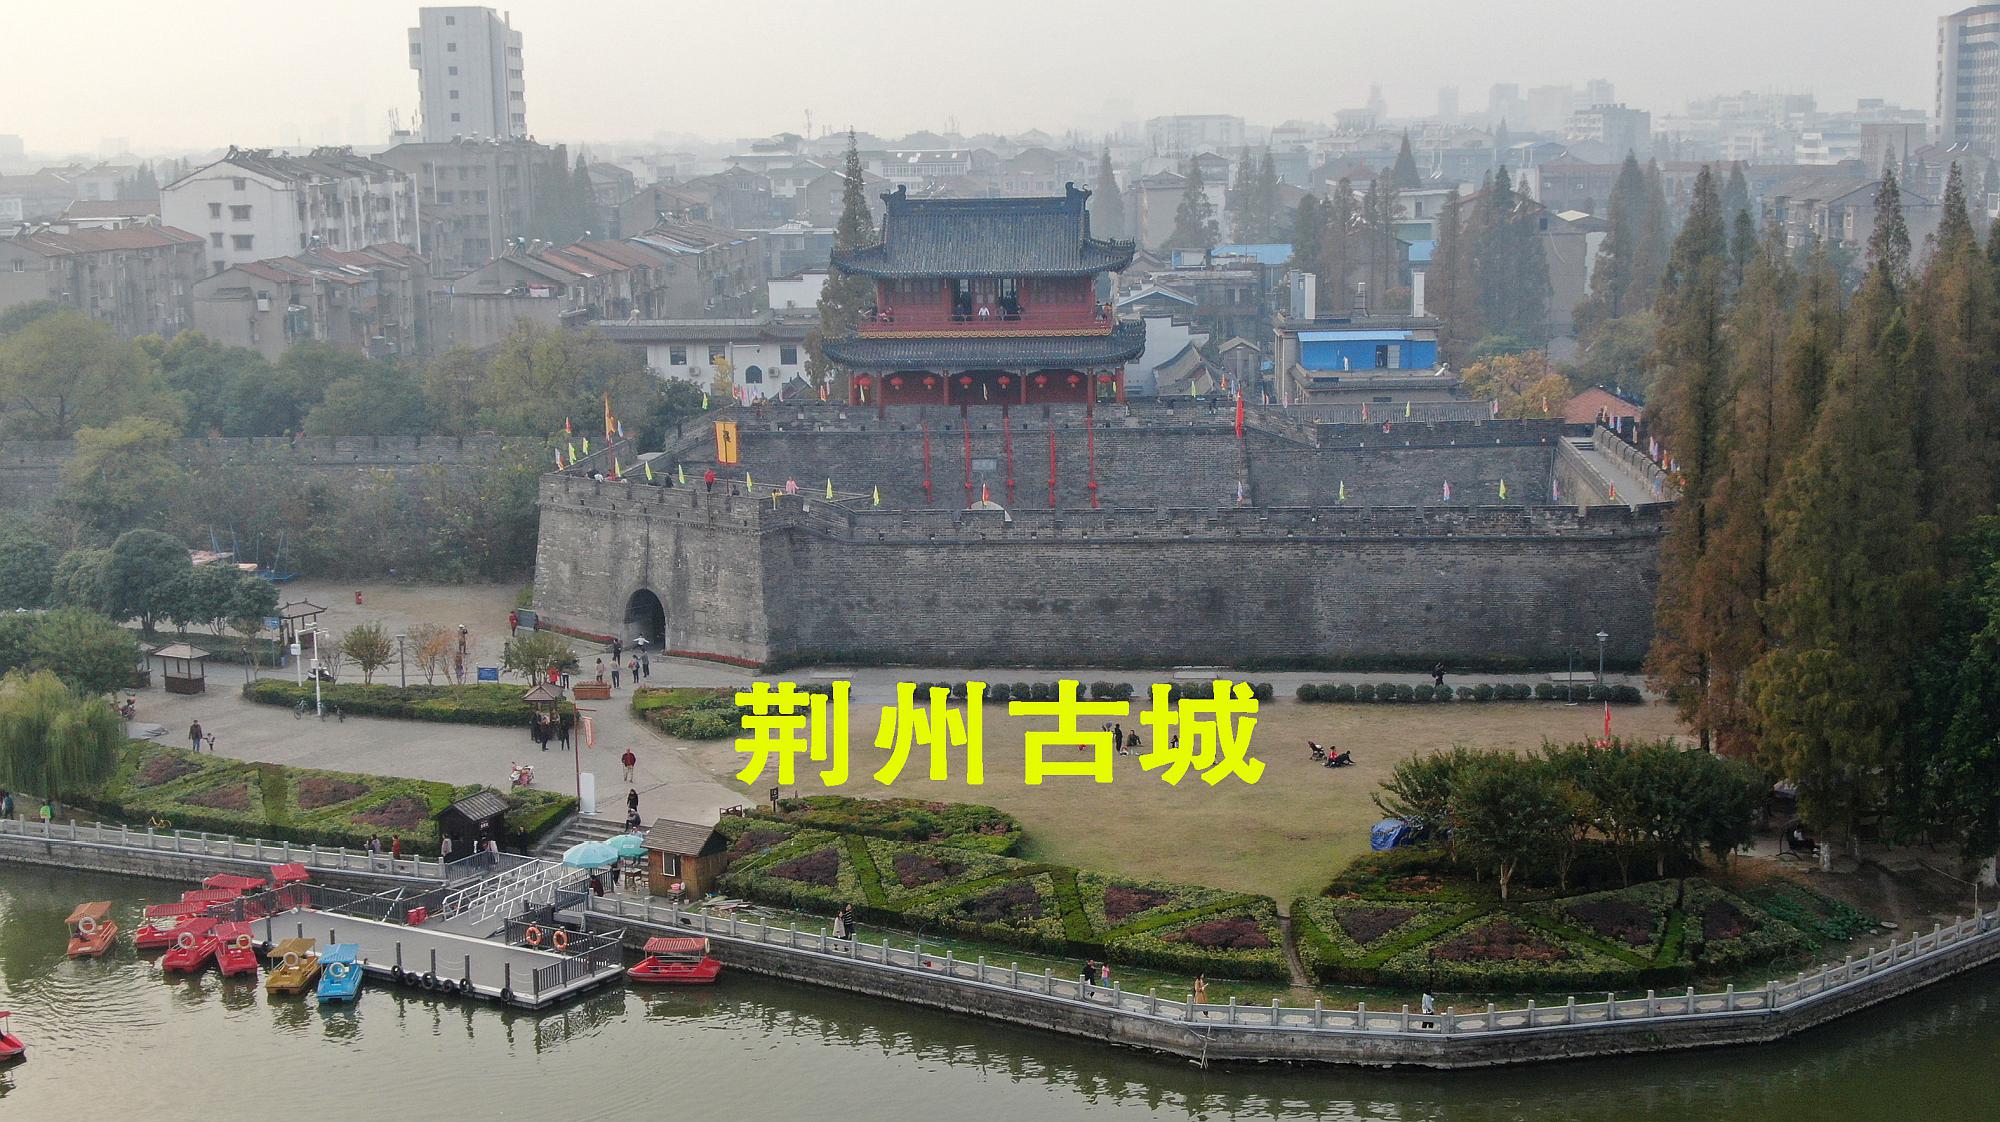 荆州古城,历史非常悠久,中国古代九州之一,三国时期重要的战场